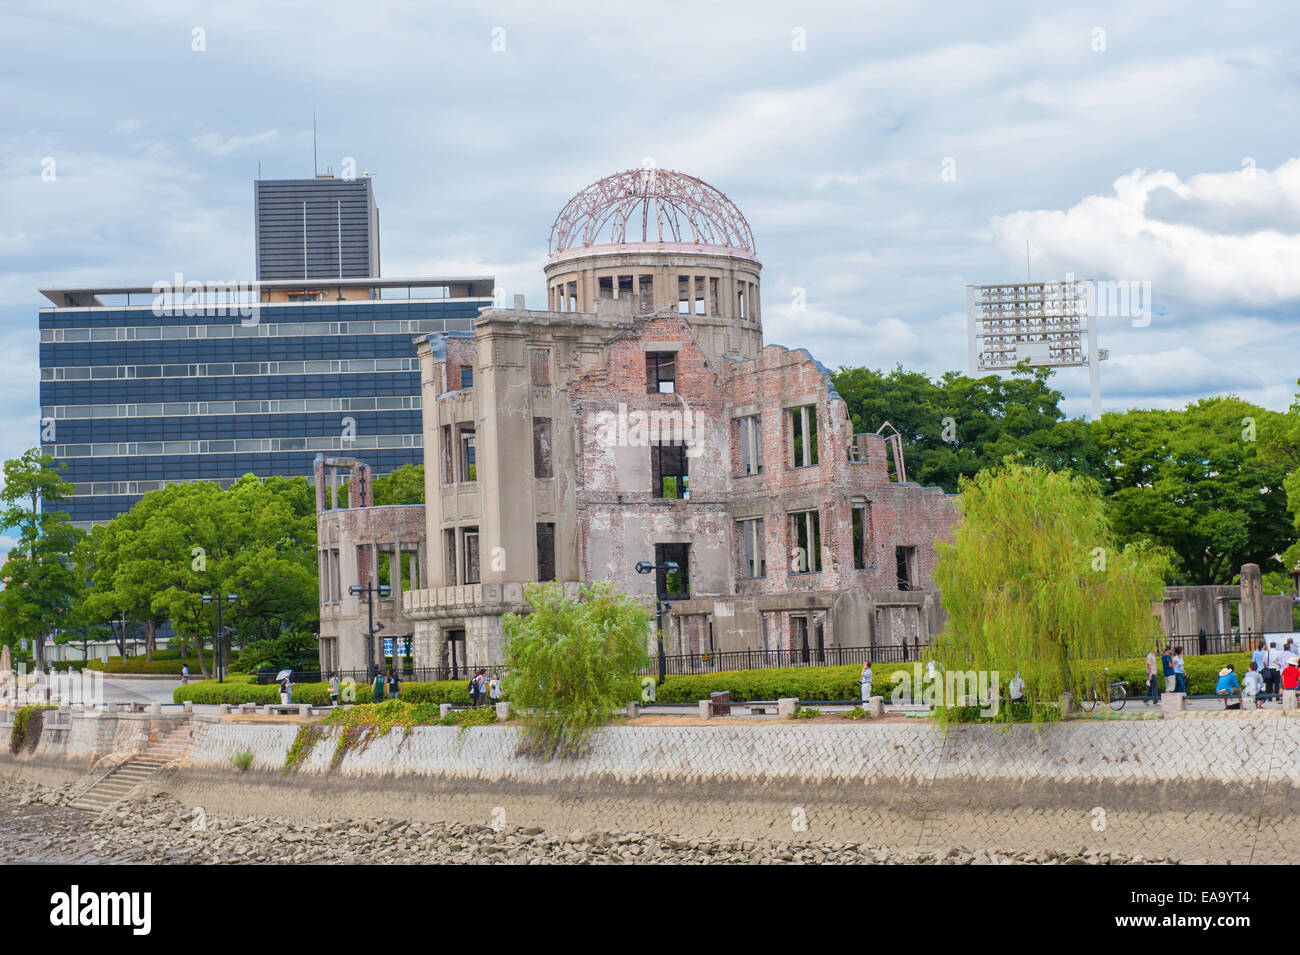 Hiroshima Peace Memorial - Genbaku atomic bomb dome, Japan Stock Photo